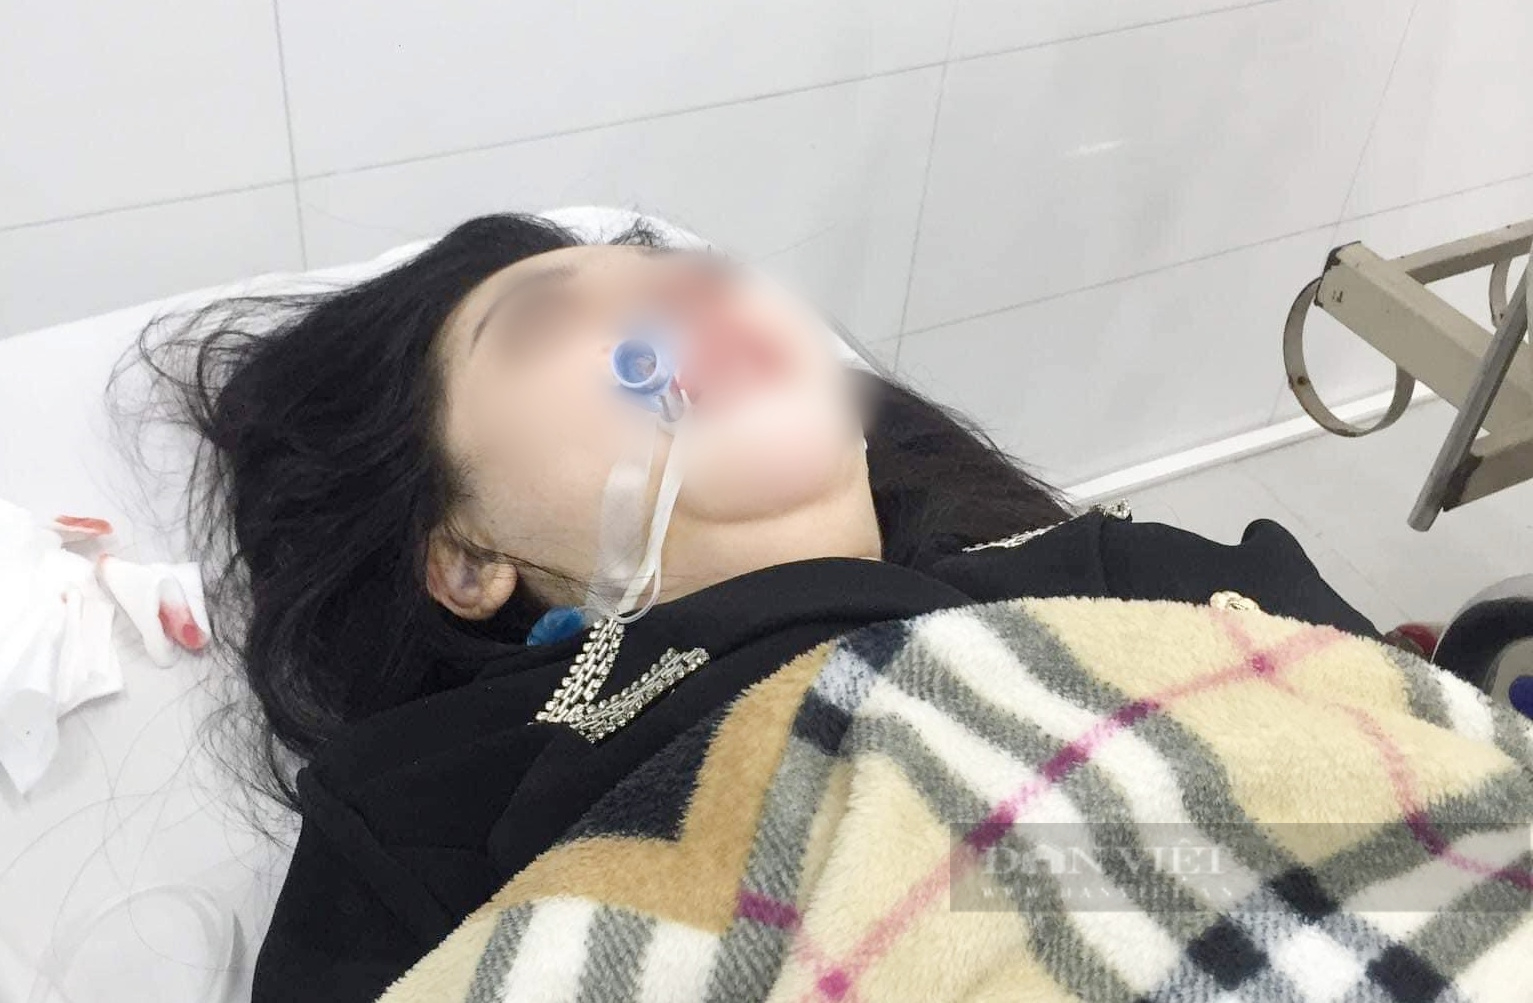 Phẫu thuật nâng mũi tại một cơ sở thẩm mỹ ở Hà Nội, cô gái 22 tuổi tử vong sau hơn 2 tháng hôn mê - Ảnh 1.